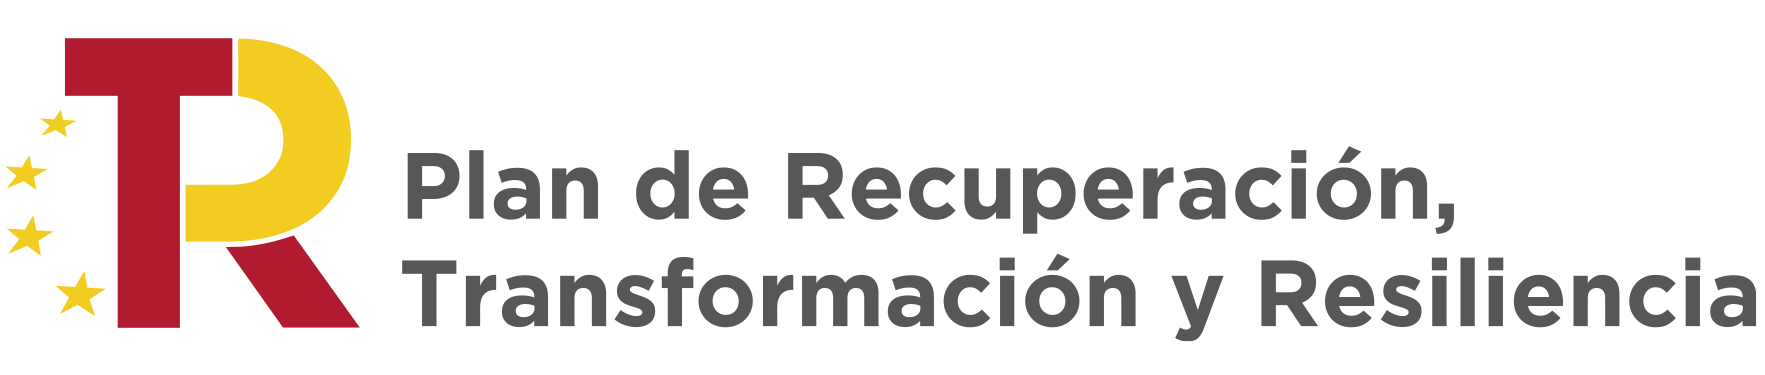 Logo_dos_lineas